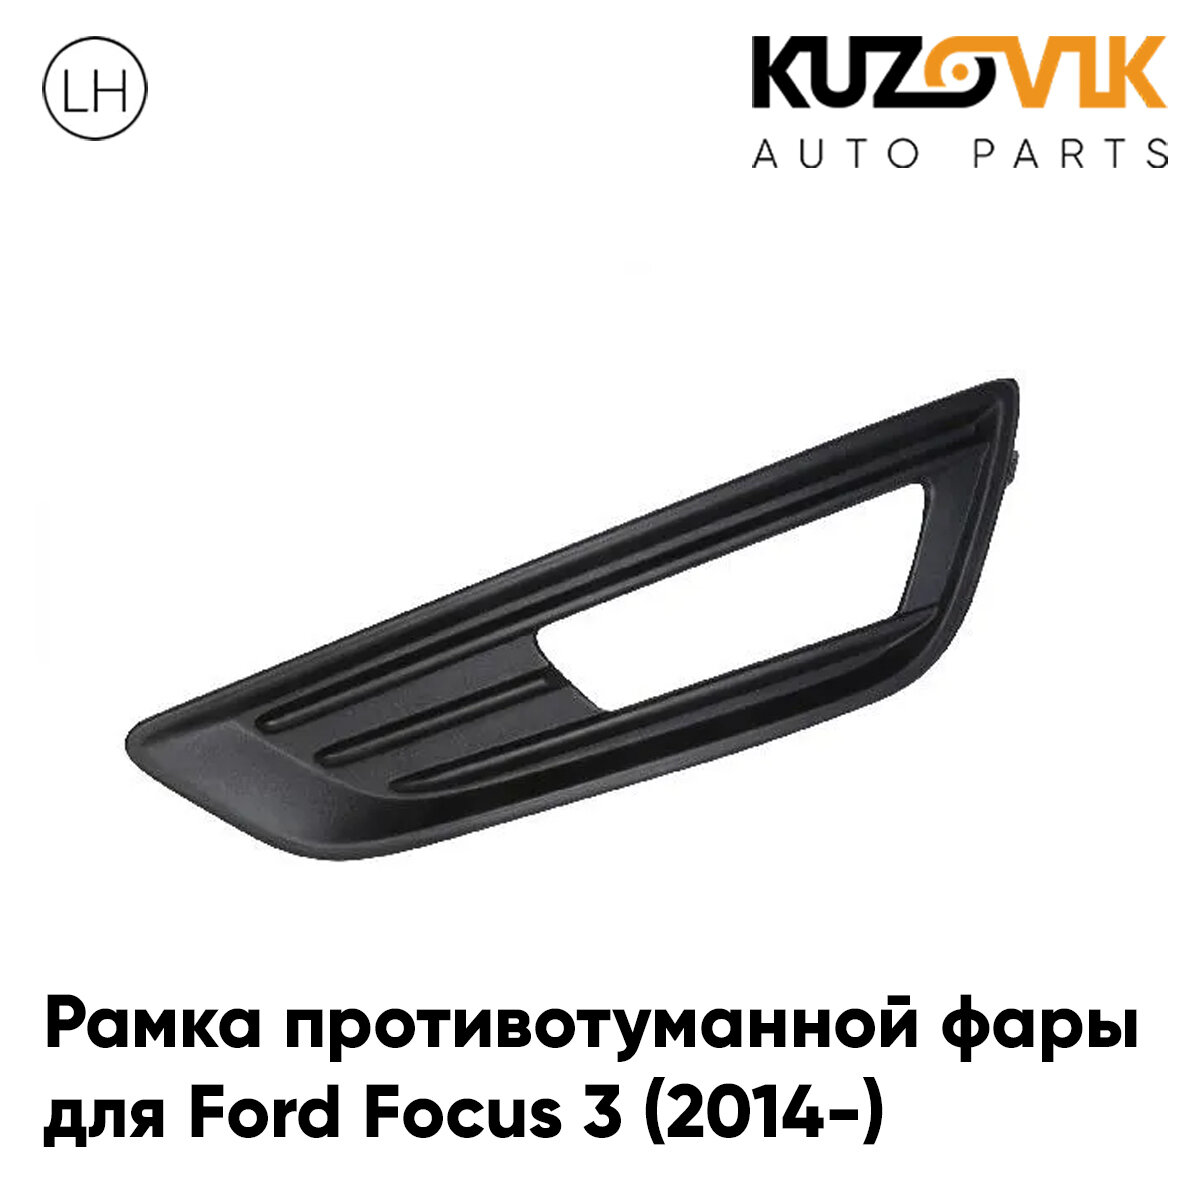 Рамка противотуманной фары для Форд Фокус Ford Focus 3 (2014-) рестайлинг черная левая, накладка, птф, туманка